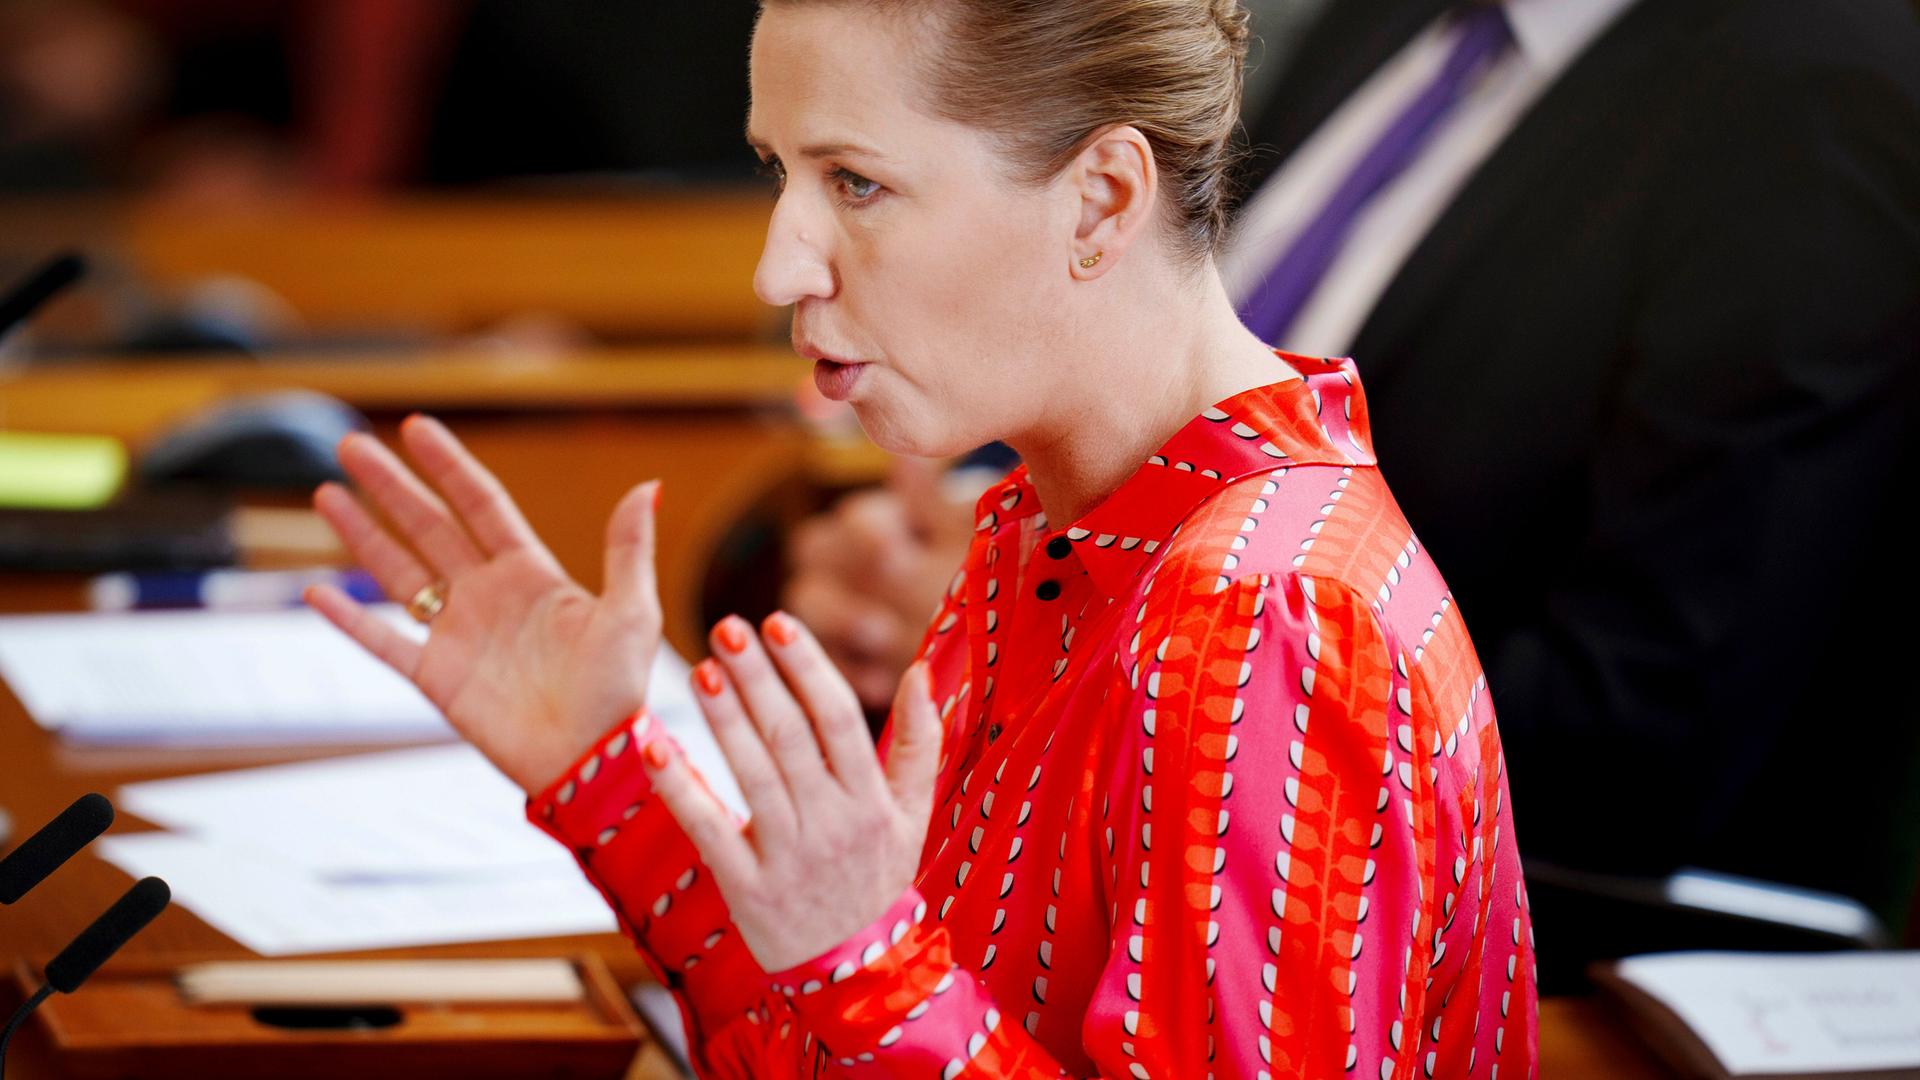 Dänemarks Ministerpräsidentin Mette Frederiksen hält eine Rede. Sie hat beide Hände gehoben.